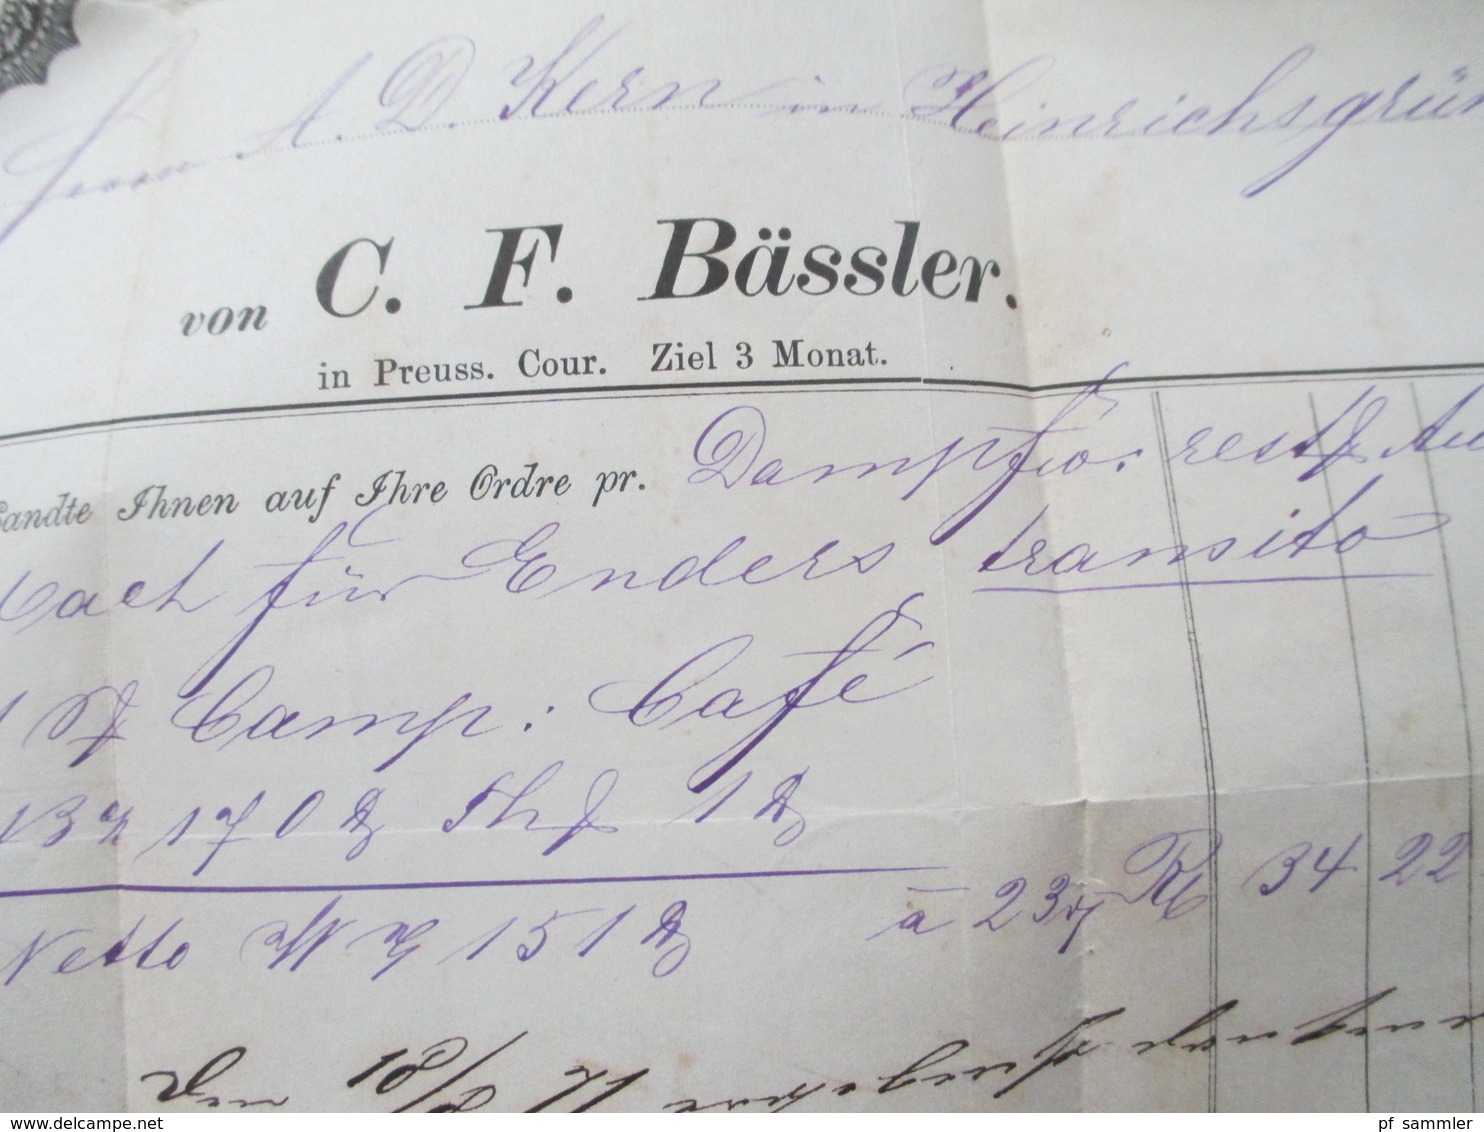 AD NDP 1871 Nr. 16 Brief mit Inhalt und Rechnung!! nach Heinrichsgrün in Böhmen + blauer Stempel Graslitz